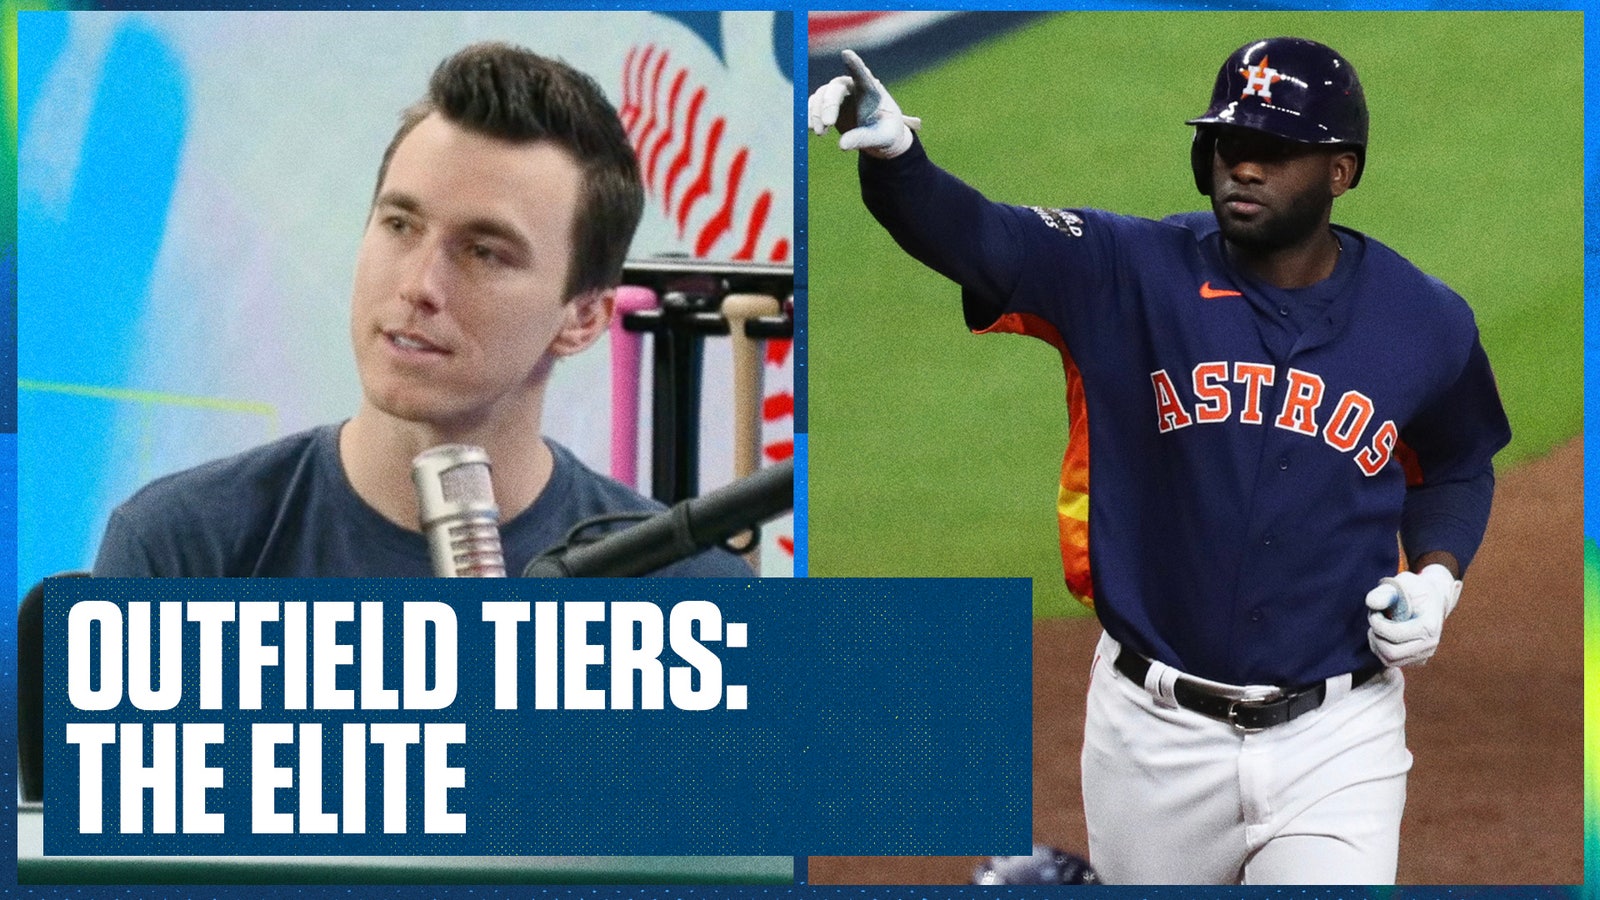 Yankees' Aaron Judge & Astros' Yordan Alvarez headline The Elite OF Tier 